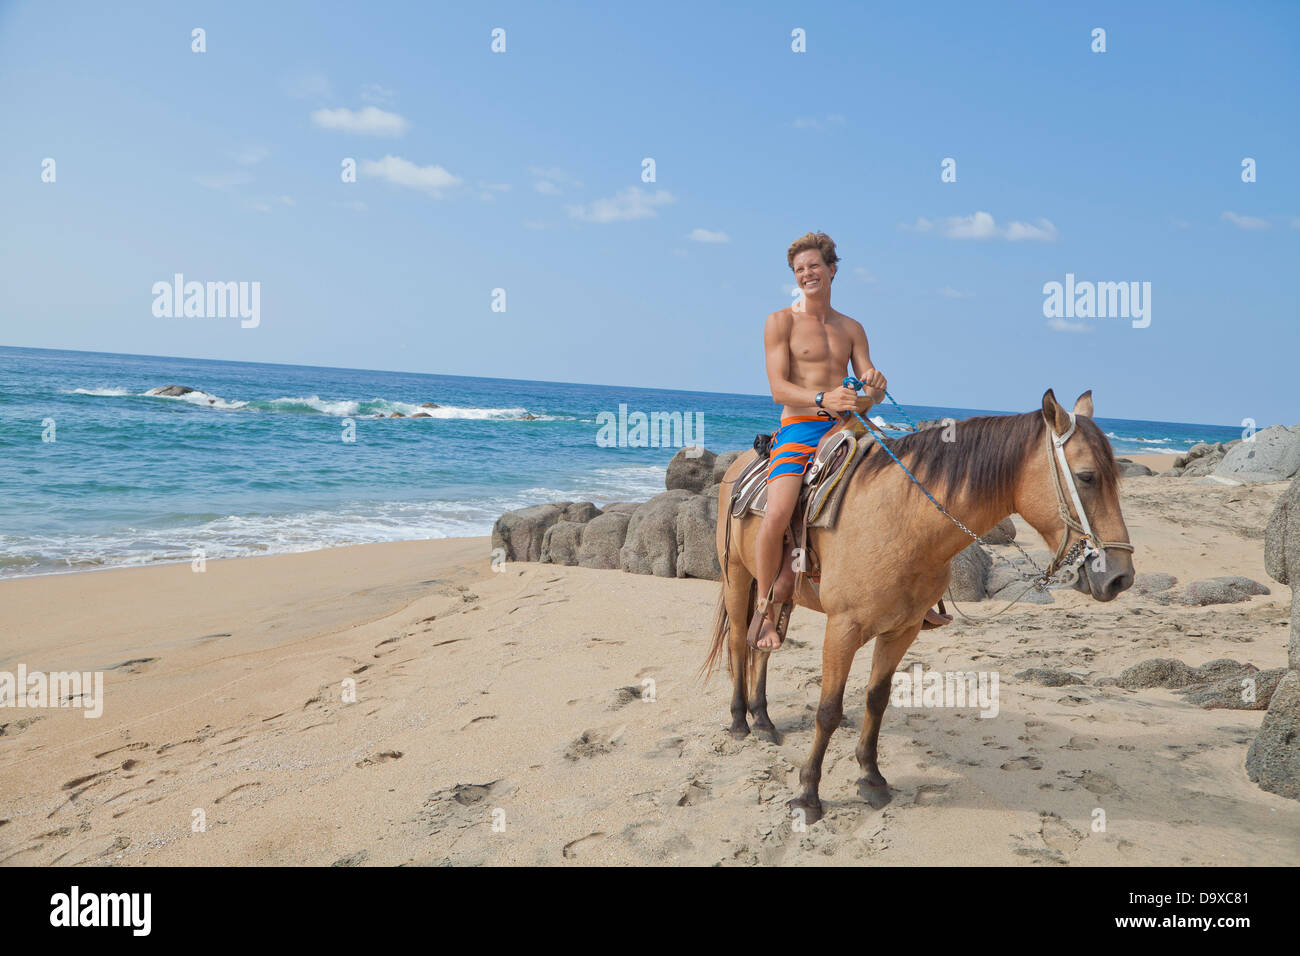 Jeune homme riding horse on beach Banque D'Images